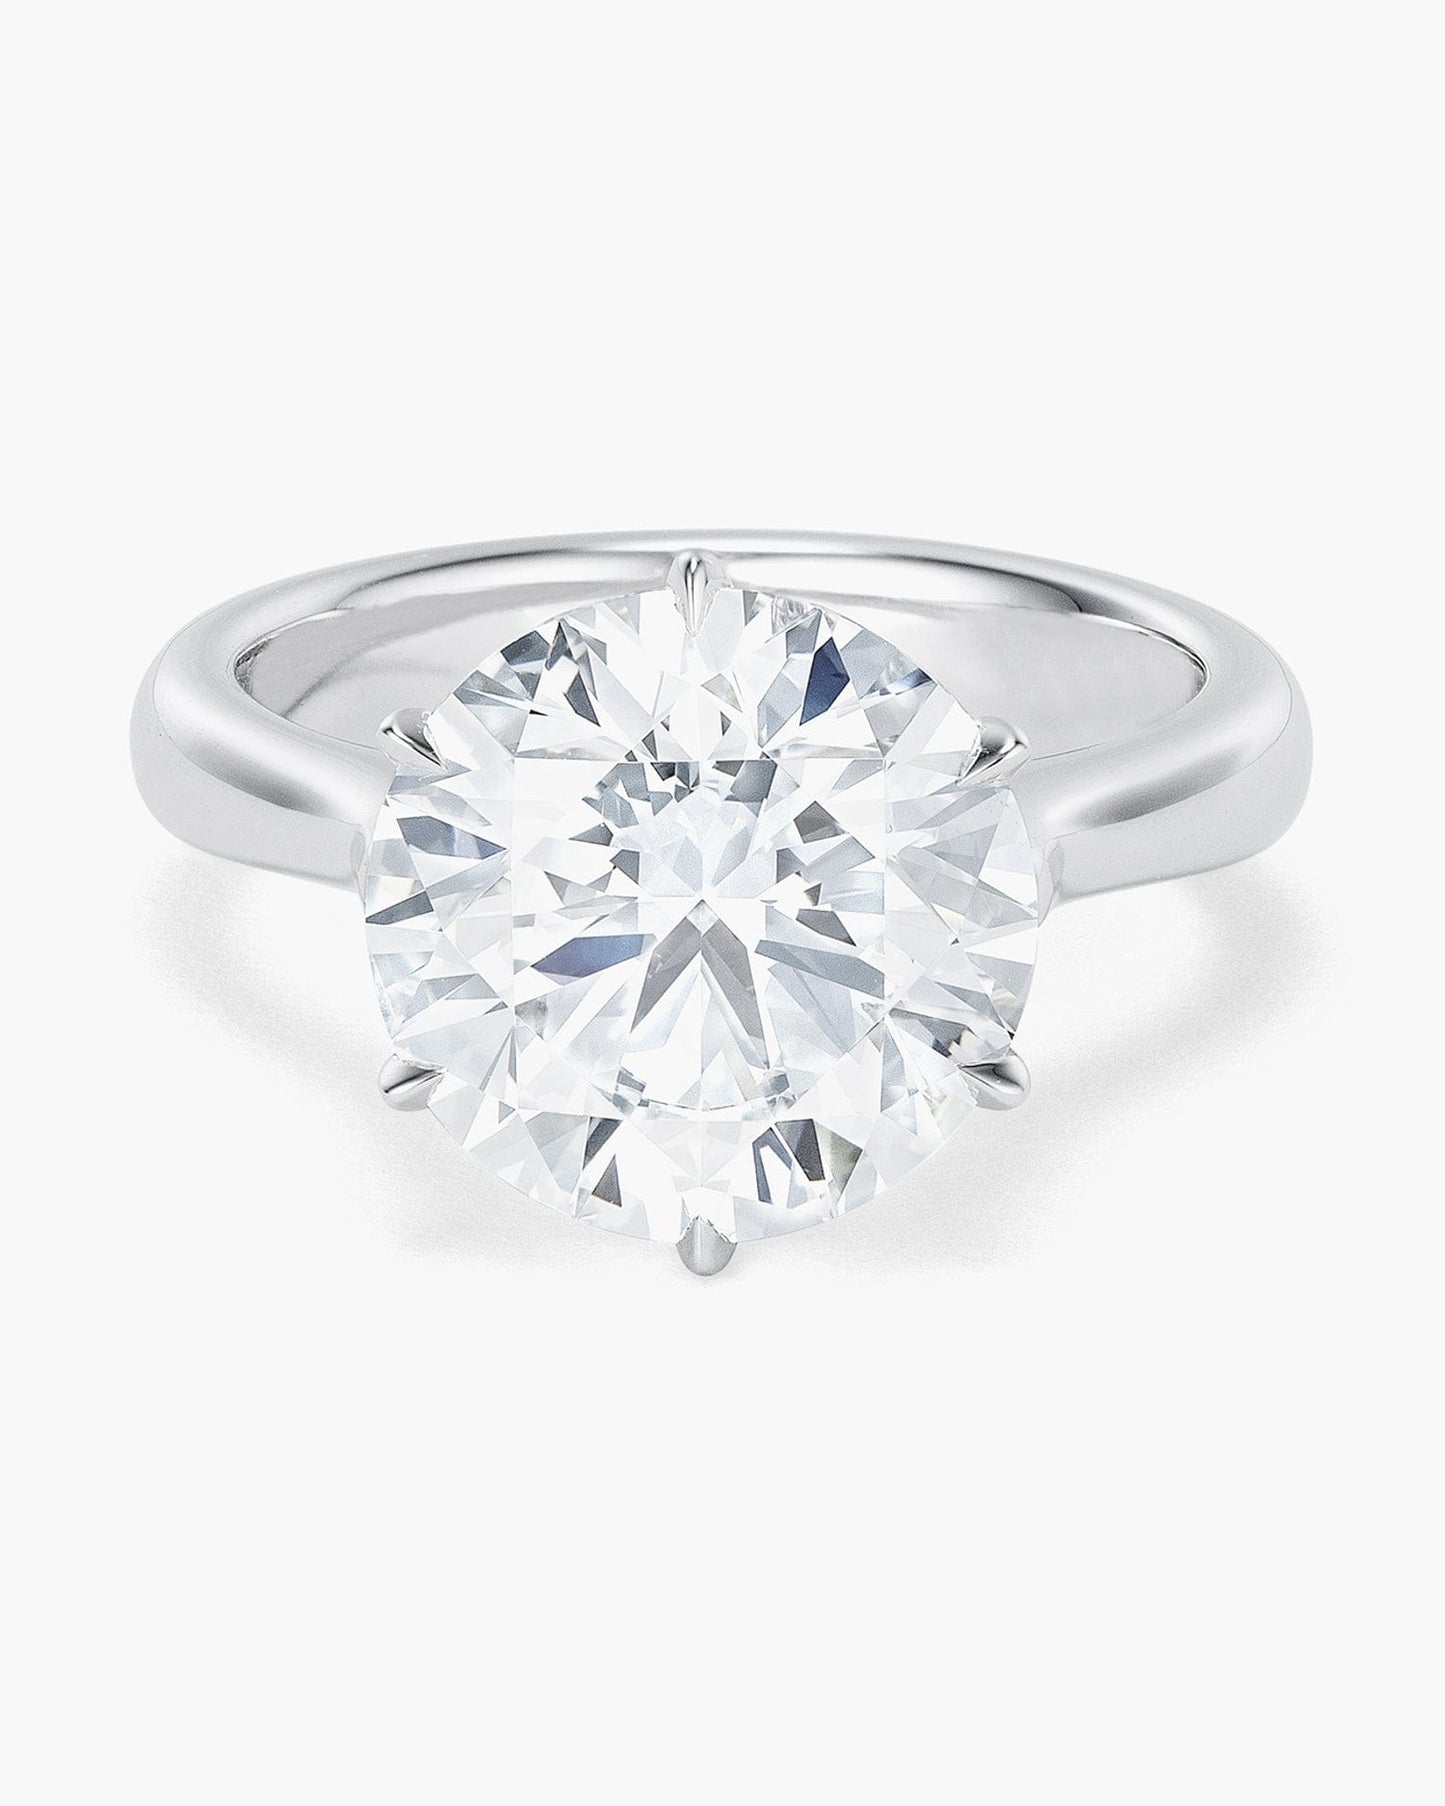 4.70 carat Round Brilliant Cut Diamond Ring